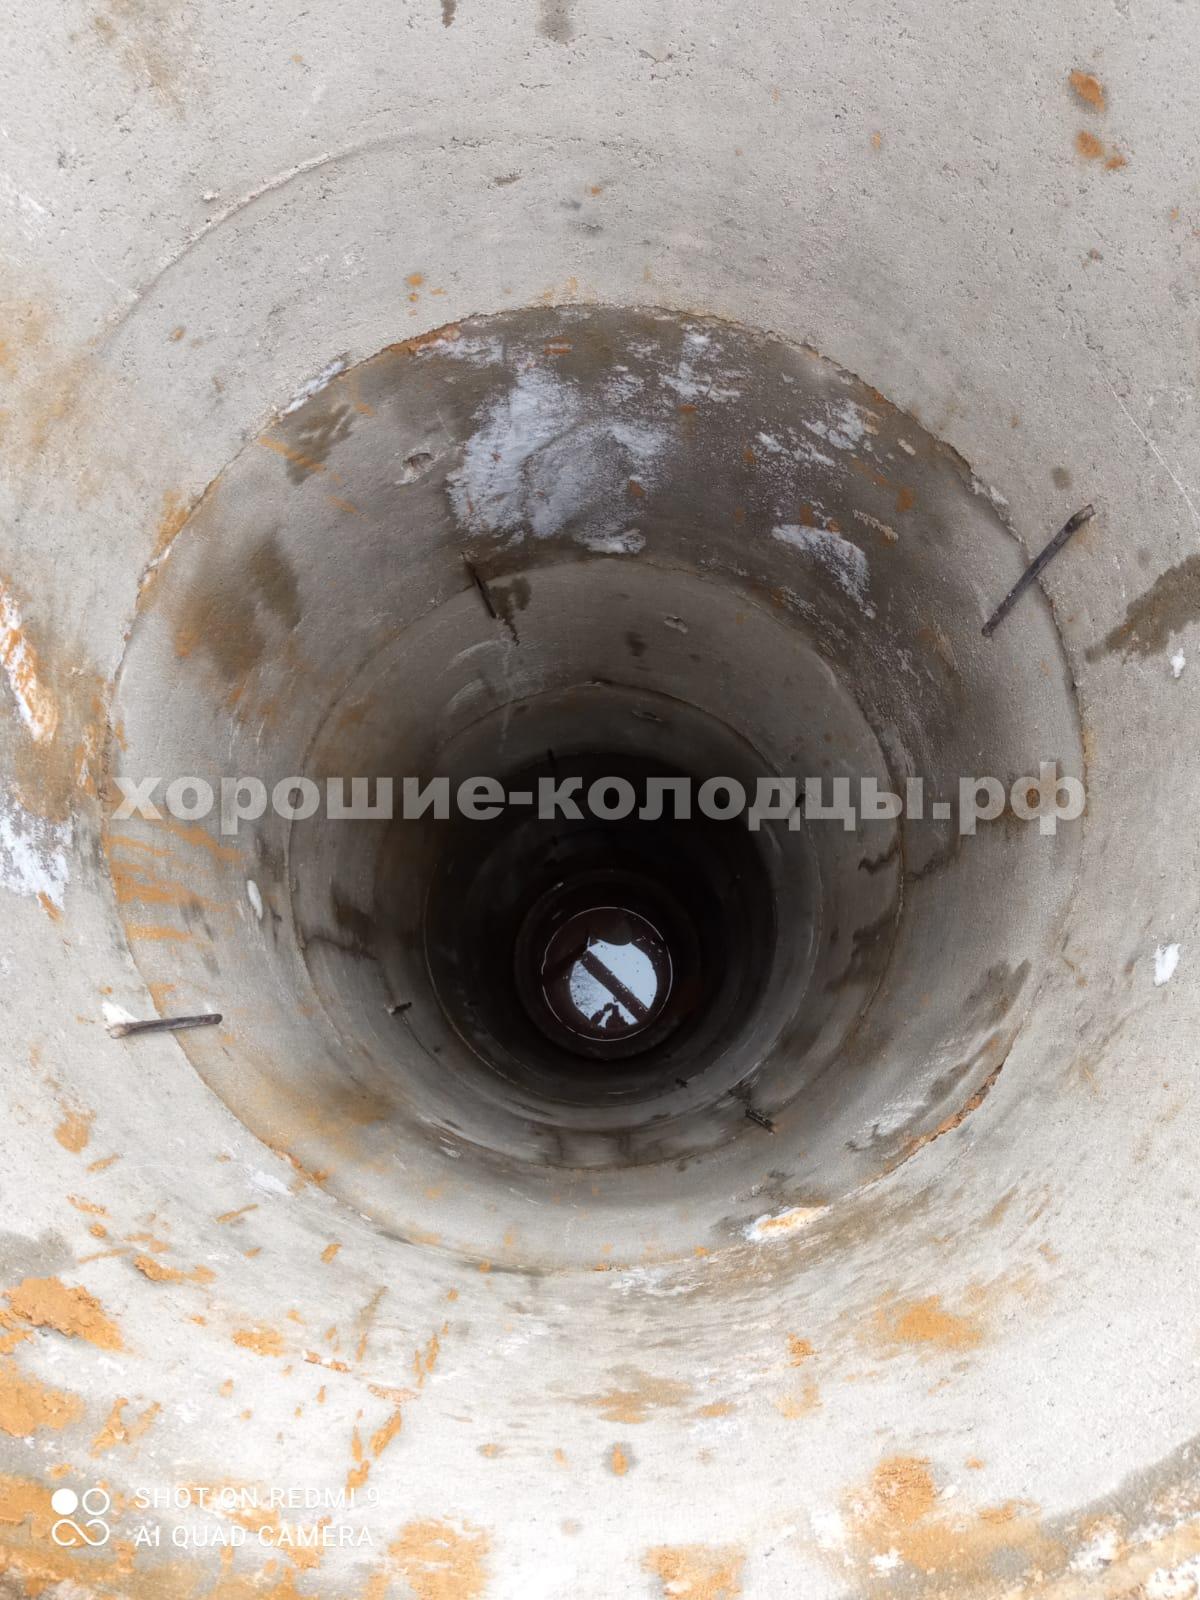 Колодец на воду 10 колец в СНТ Курсакова-1, Истринский р-н, Подмосковье.